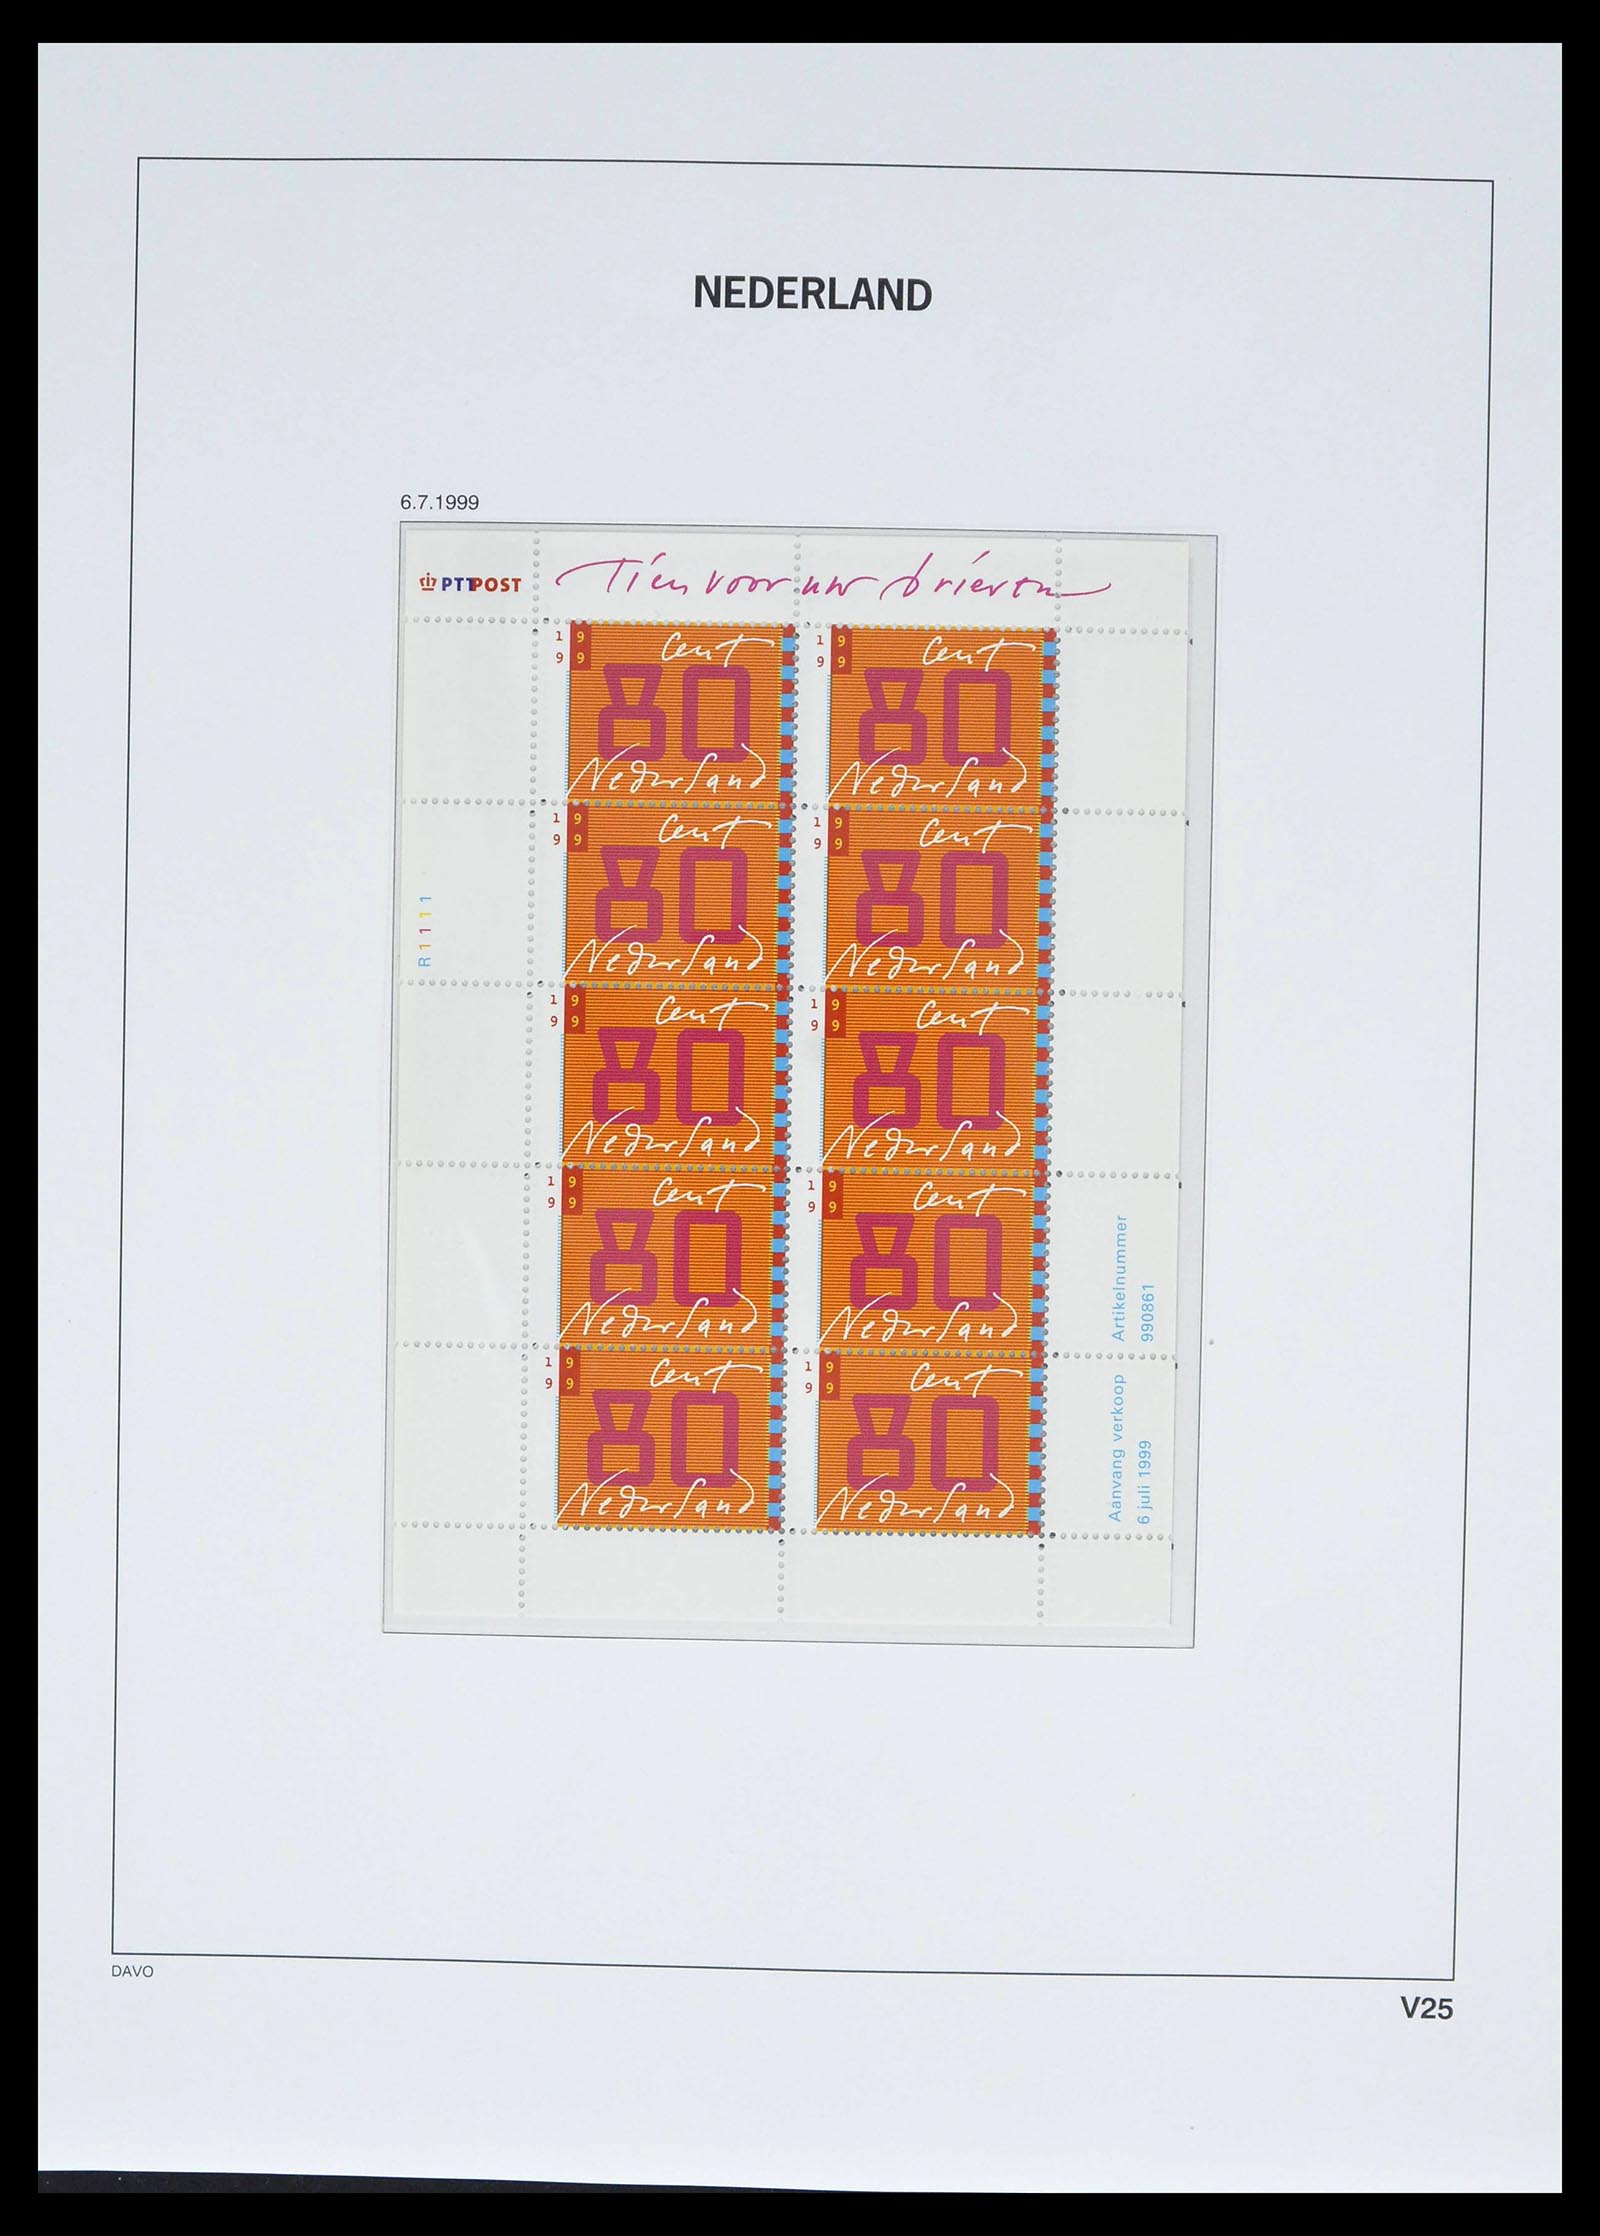 39134 0036 - Stamp collection 39134 Netherlands sheetlets 1992-2019!